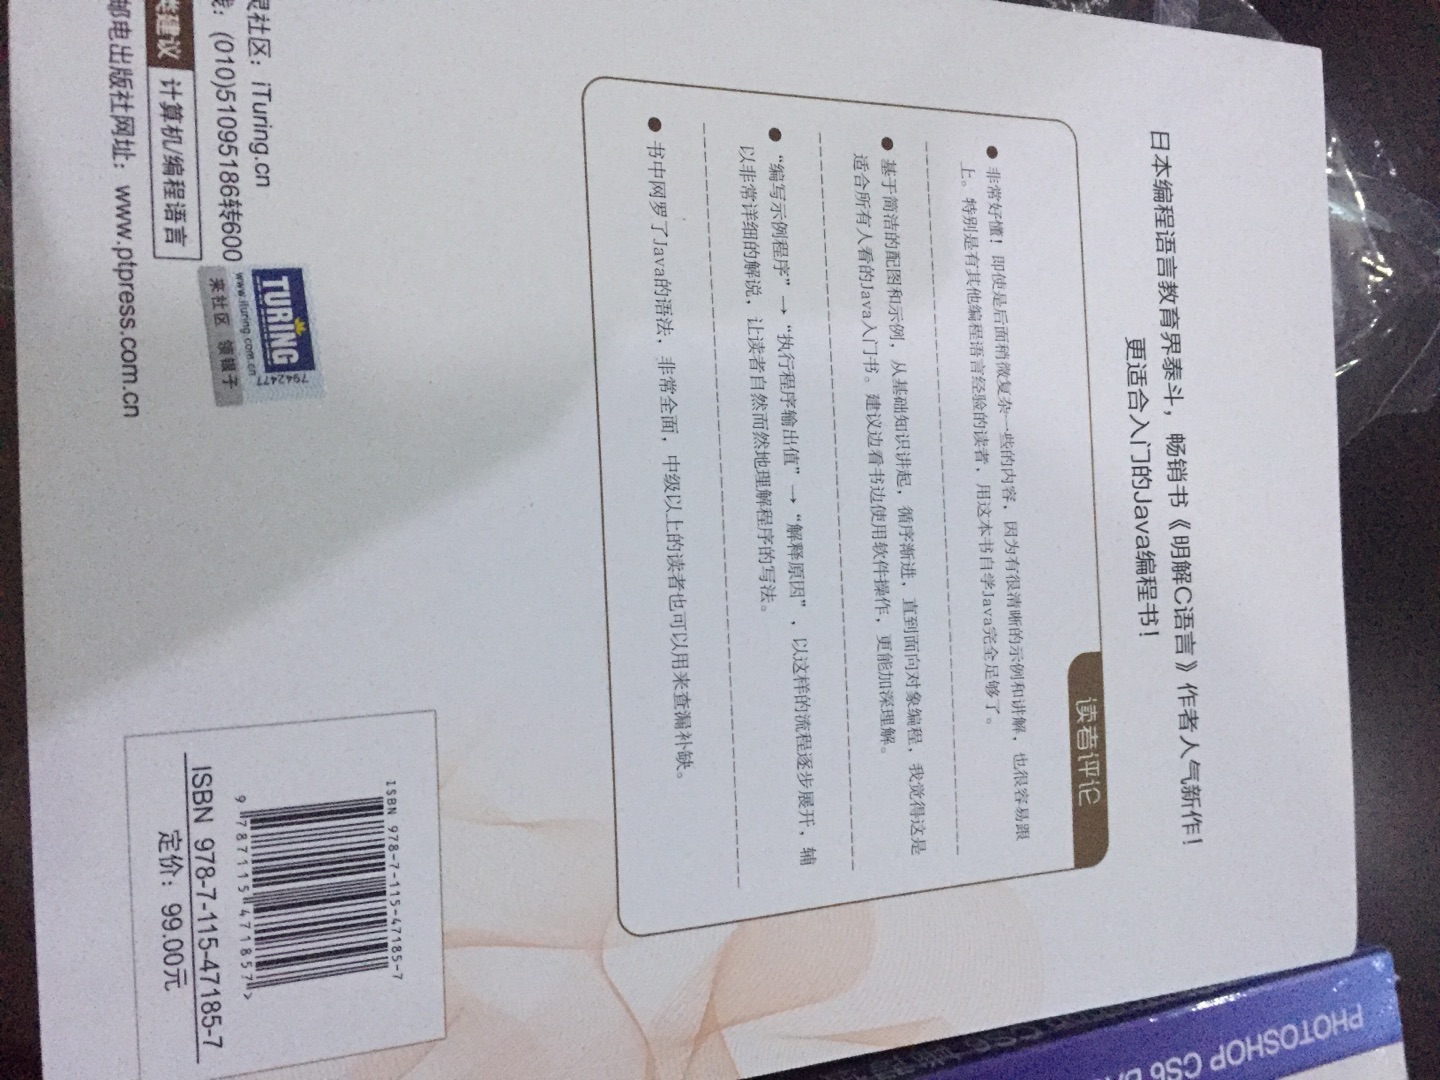 不错！是正版，包装完好！最近一直在上海图书馆看这本书，学Java这本书算是很好的！